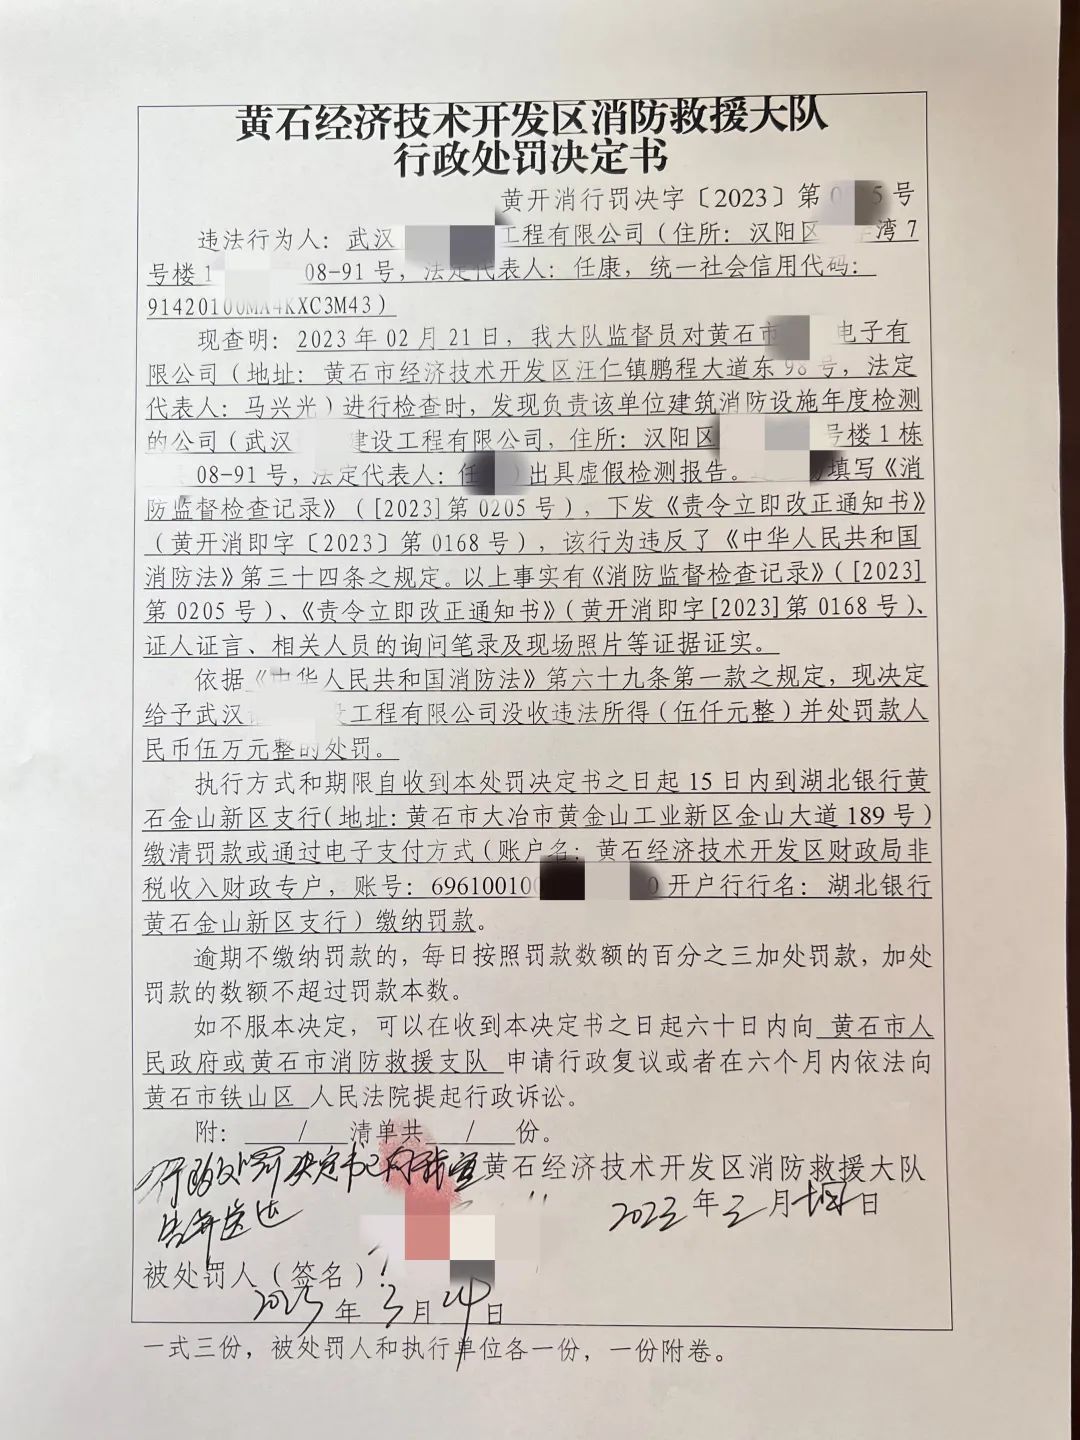 对武汉某消防技术服务机构“出具虚假文件”行为罚款6.5万元